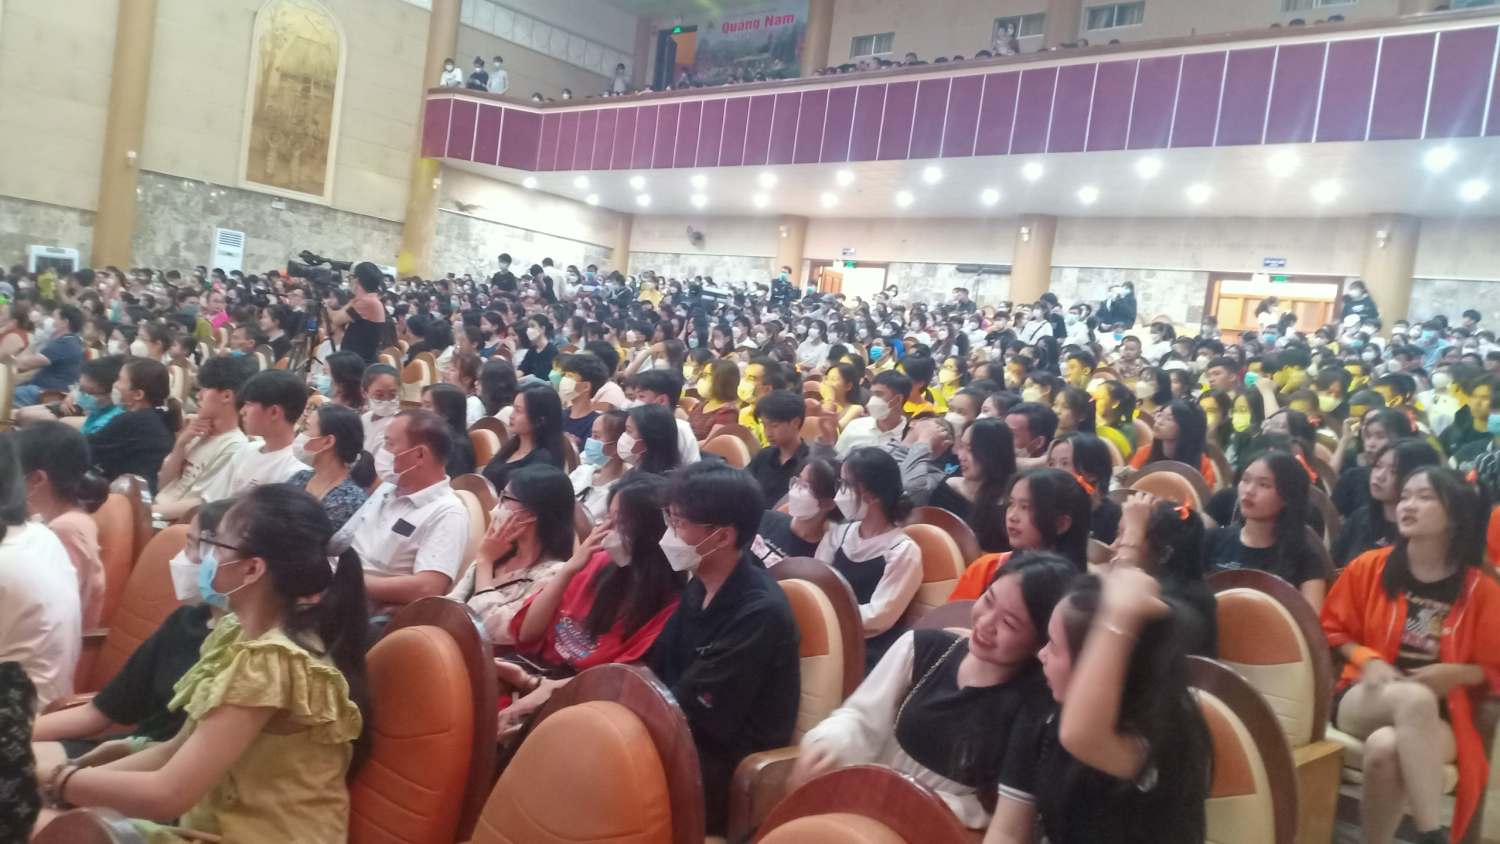 Đông đảo khán giả dự xem đêm chung kết tại Trung tâm Văn hóa Quảng Nam